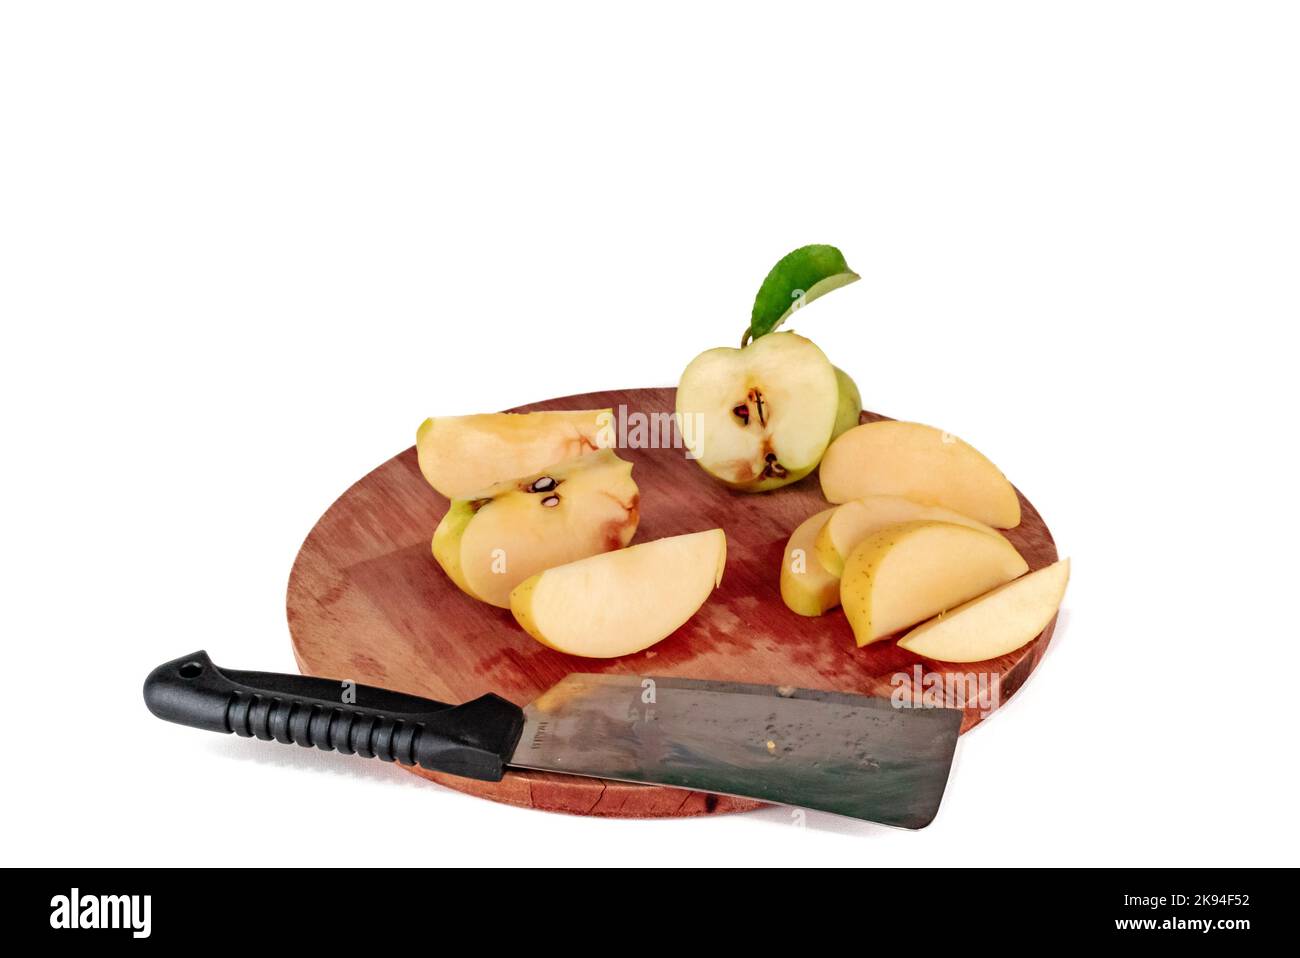 Gelbe Apfelscheiben auf einem hölzernen Schneidebrett geschnitten. Äpfel, die mit einem Spaltmesser oder einem halbgoldenen Schneidemesser geschnitten werden, köstlich in Scheiben geschnittenes, grünes Blatt. Stockfoto